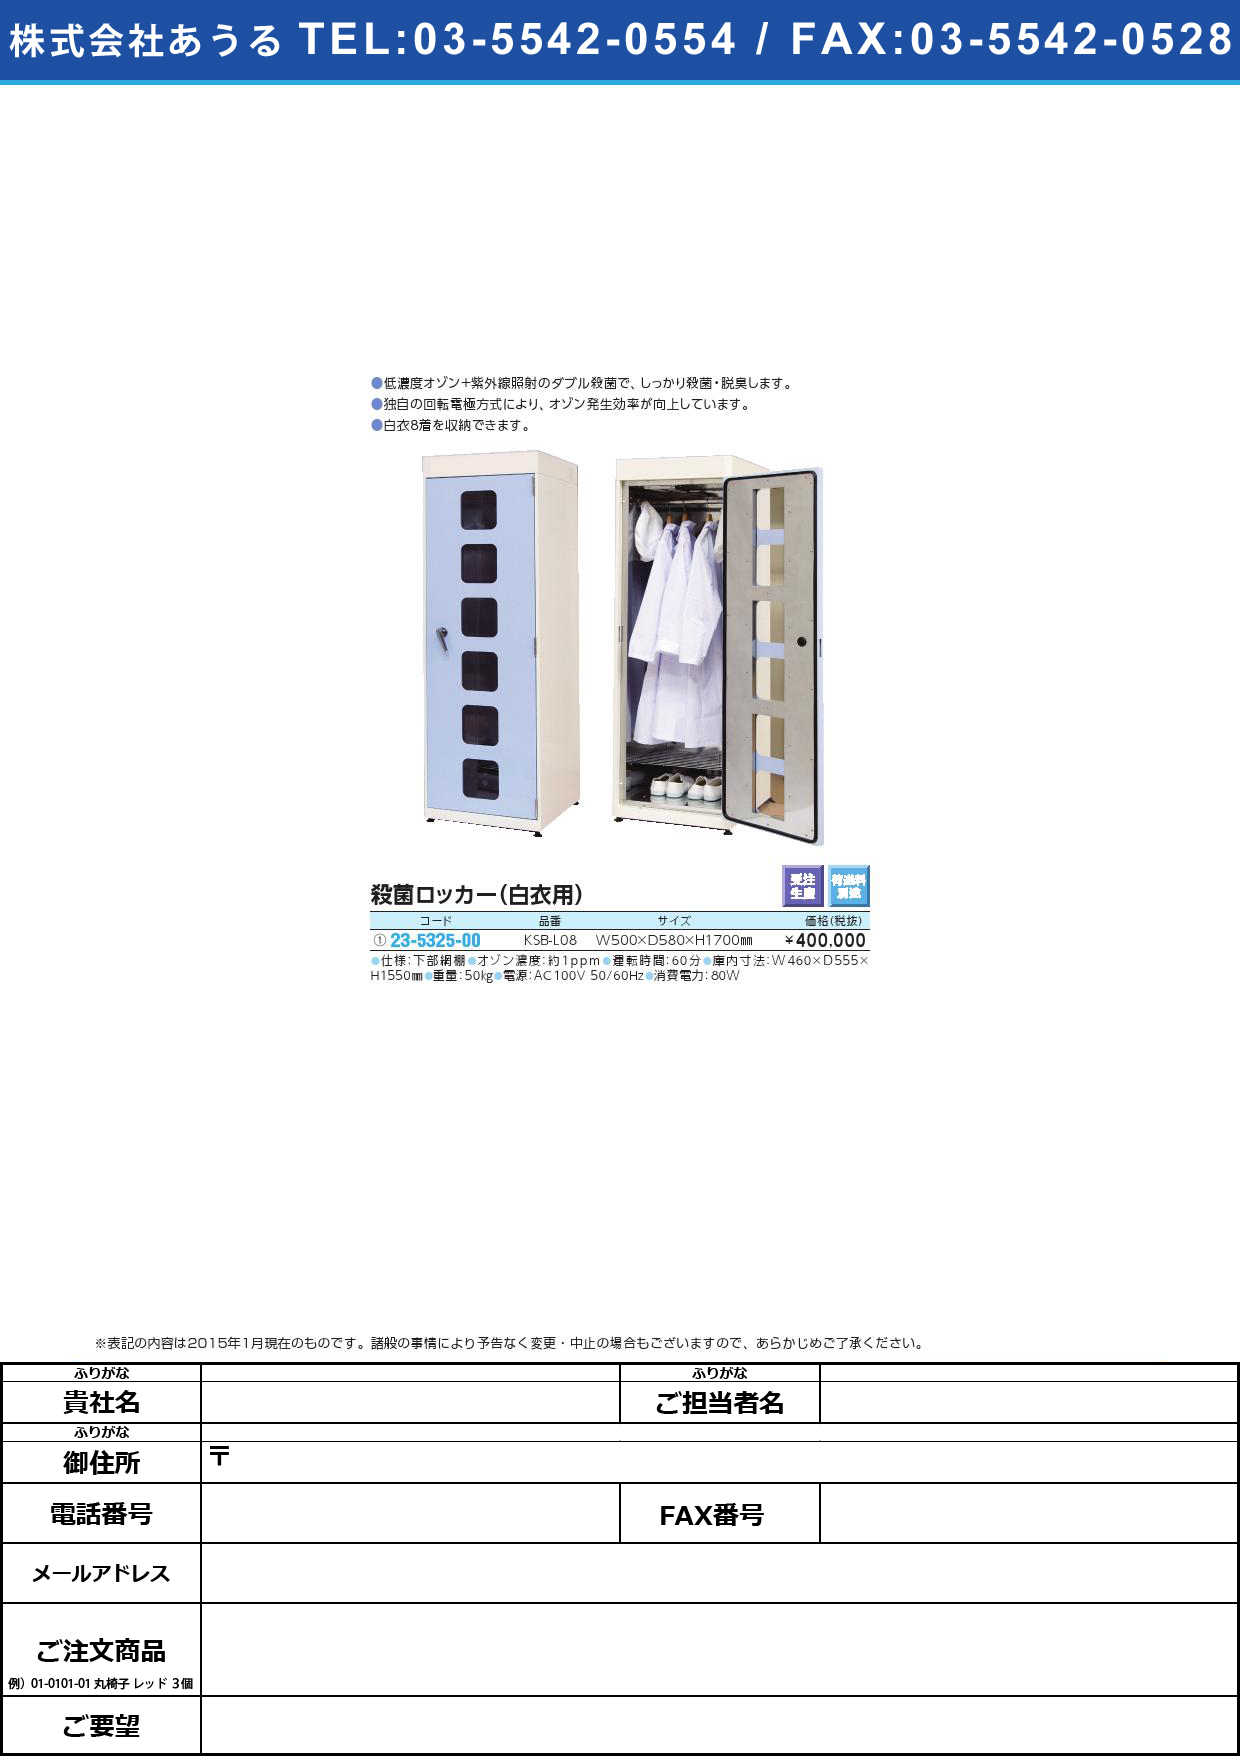 (23-5325-00)殺菌ロッカー（白衣用） ｻｯｷﾝﾛｯｶｰ(23-5325-00)KSB-L08(ｶﾌﾞｱﾐﾀﾞﾅ8ﾁｬｸ【1台単位】【2015年カタログ商品】